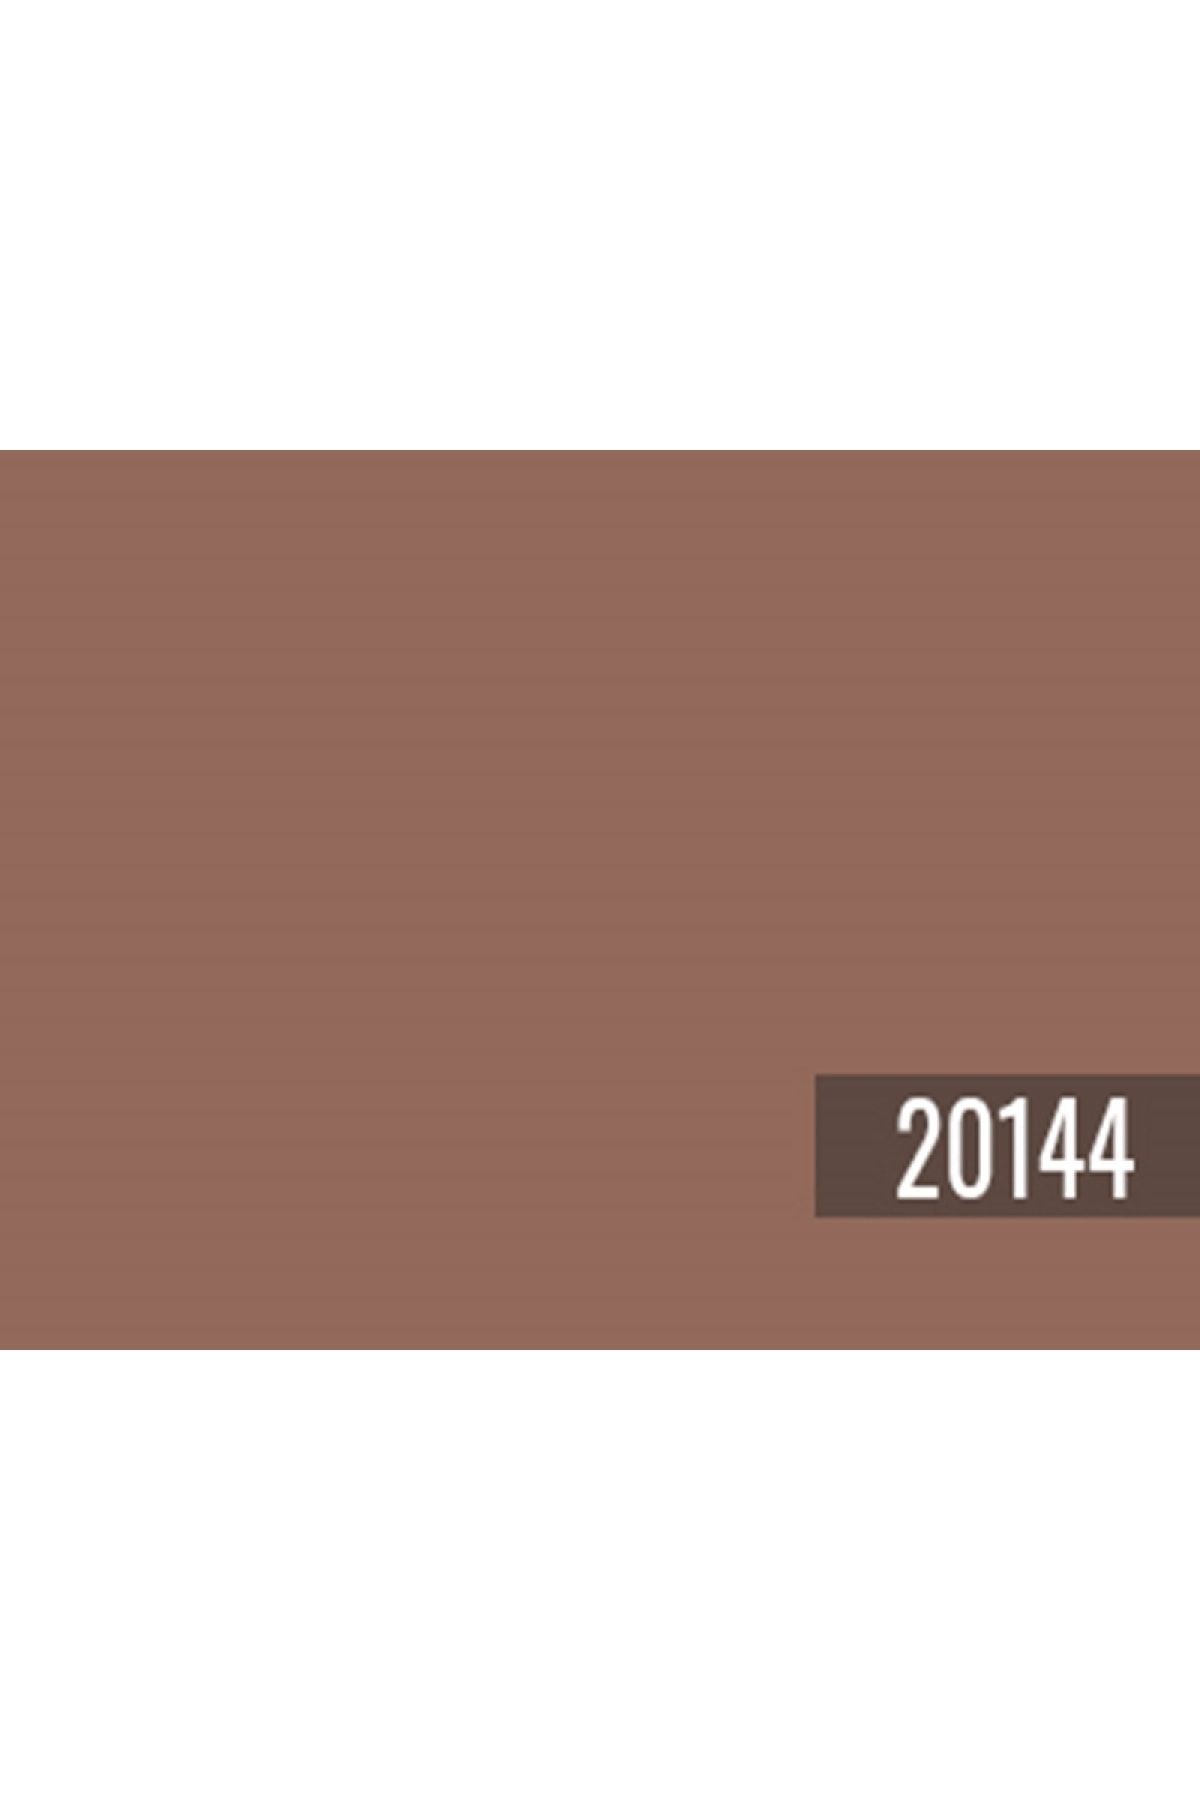 Güzel Evim Serisi Zengin Mat 2 lt Grounded Red 20144 Yorumları - Trendyol